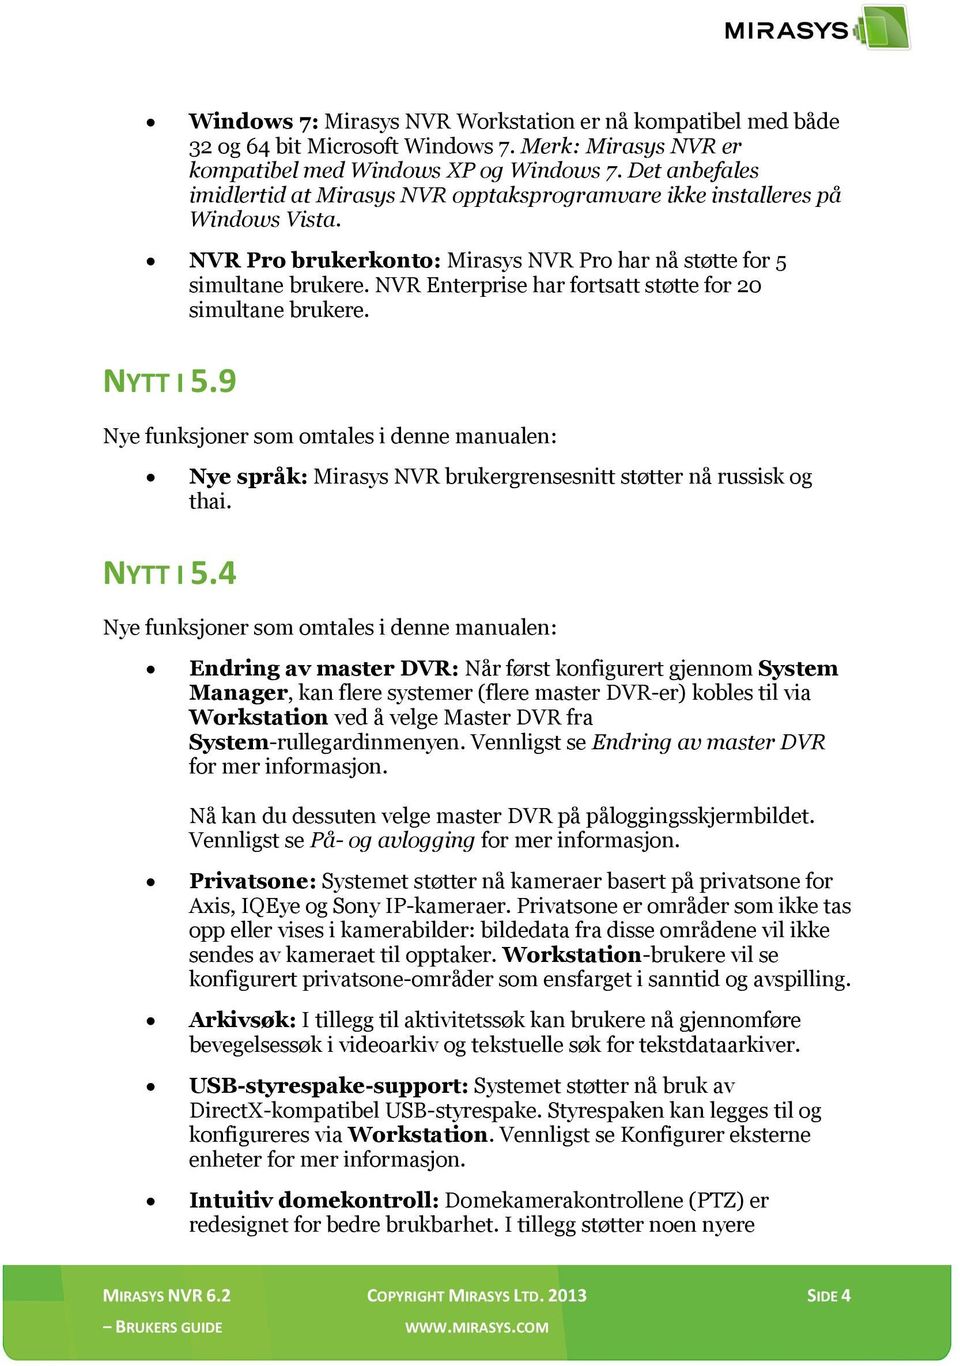 NVR Enterprise har fortsatt støtte for 20 simultane brukere. NYTT I 5.